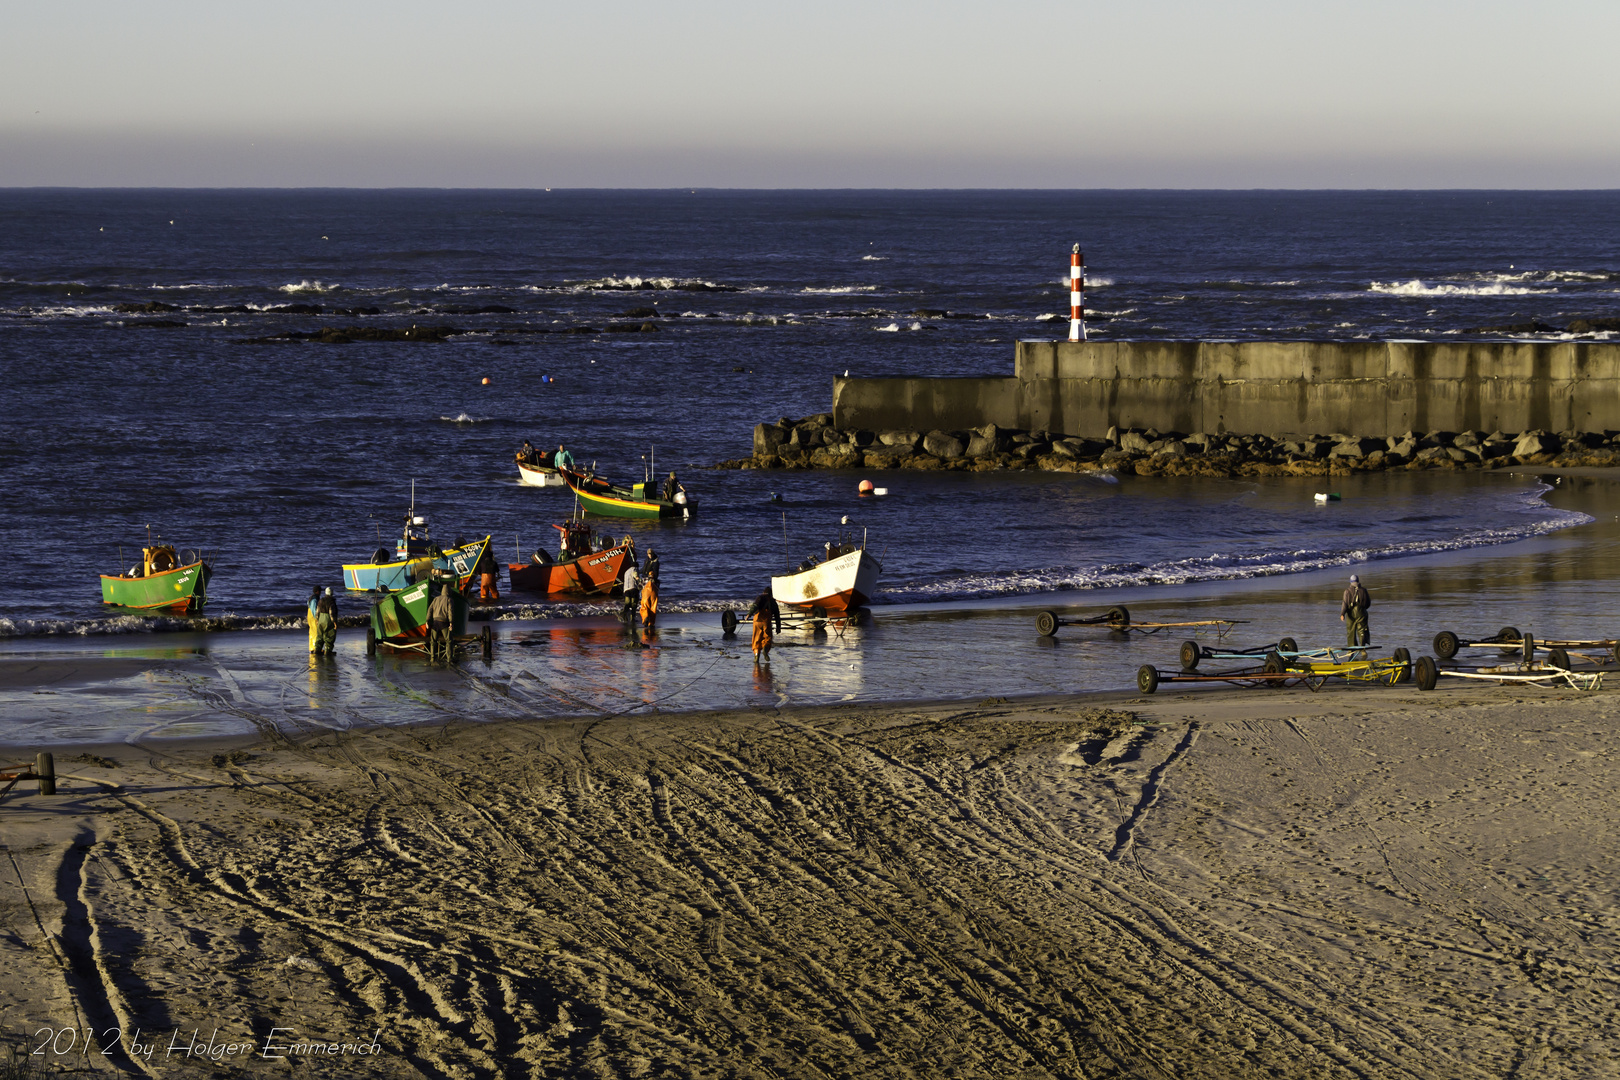 Fischfang und verkauf in Nord-Portugal